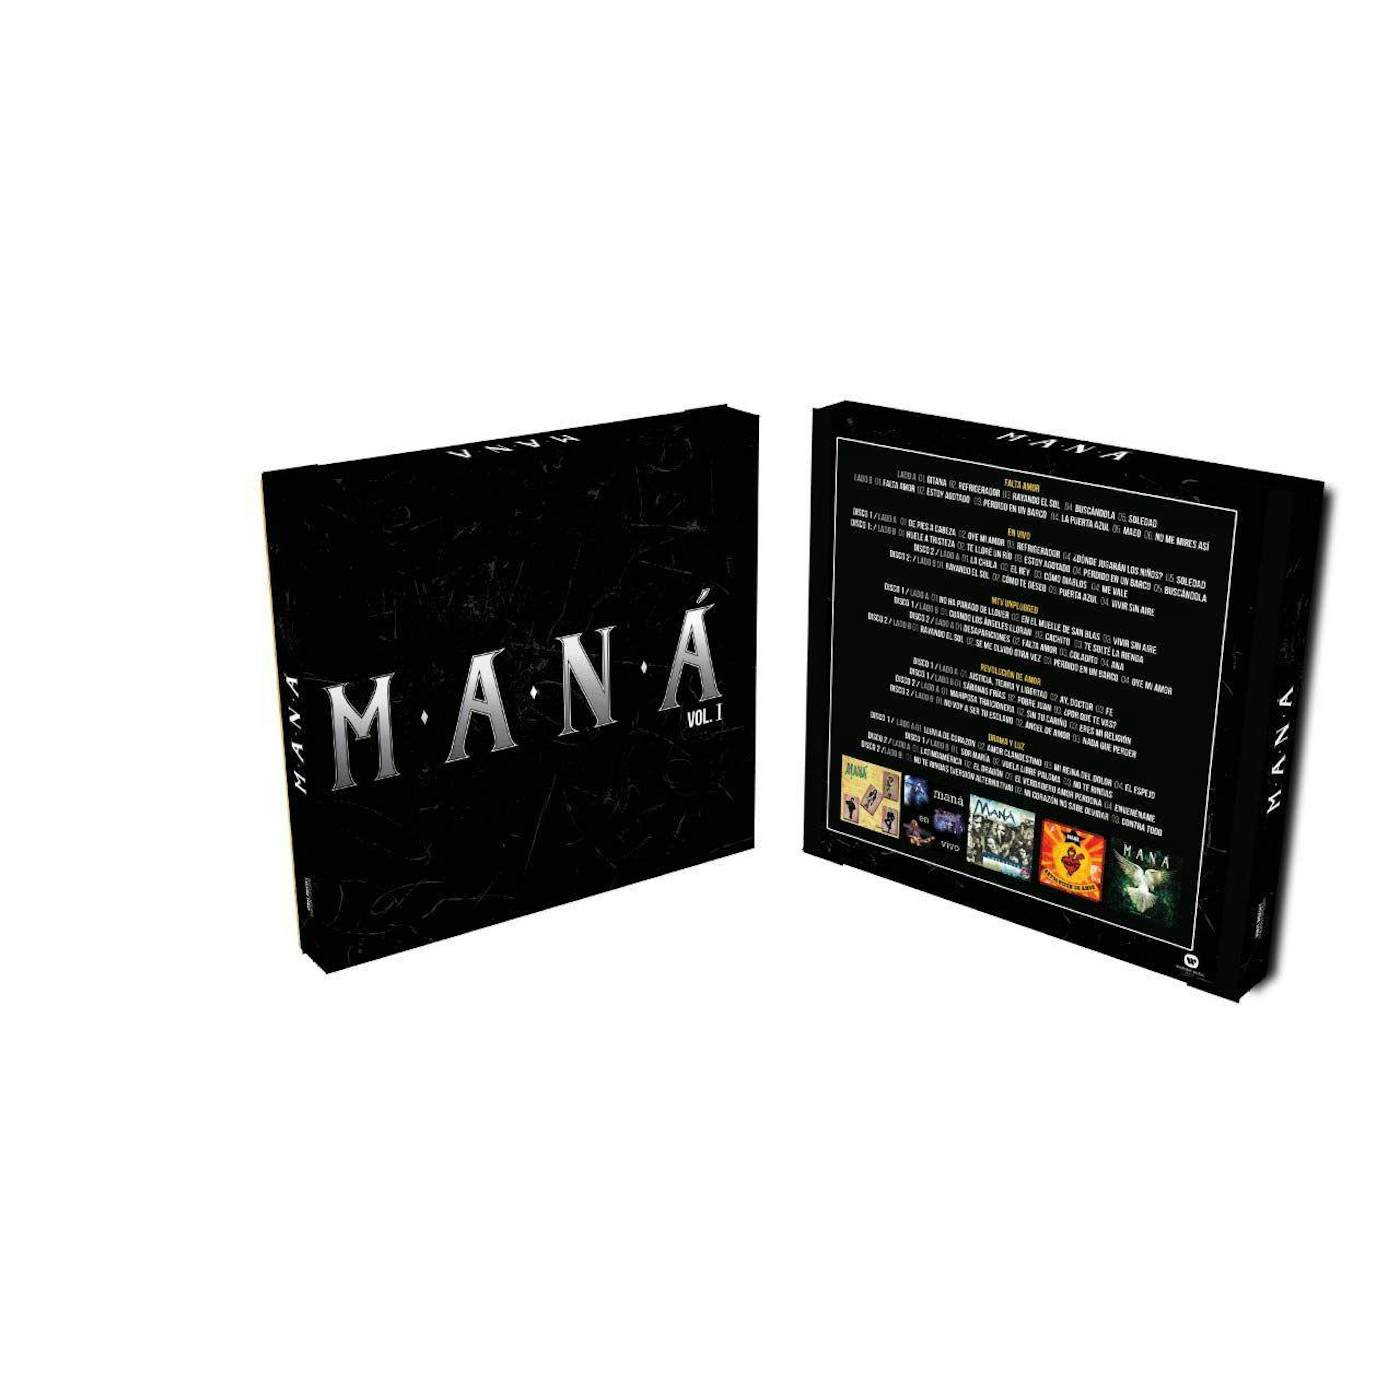  Maná Remastered Vol. 1 (9LP) Vinyl Record